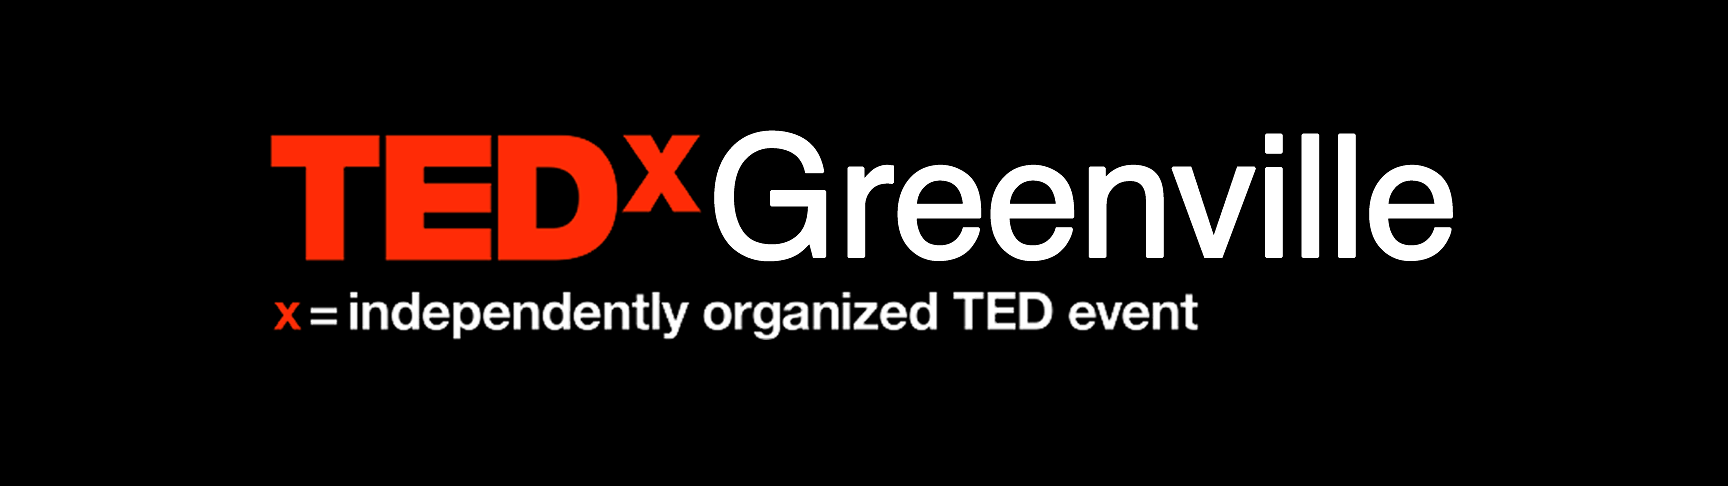 TEDxGreenville